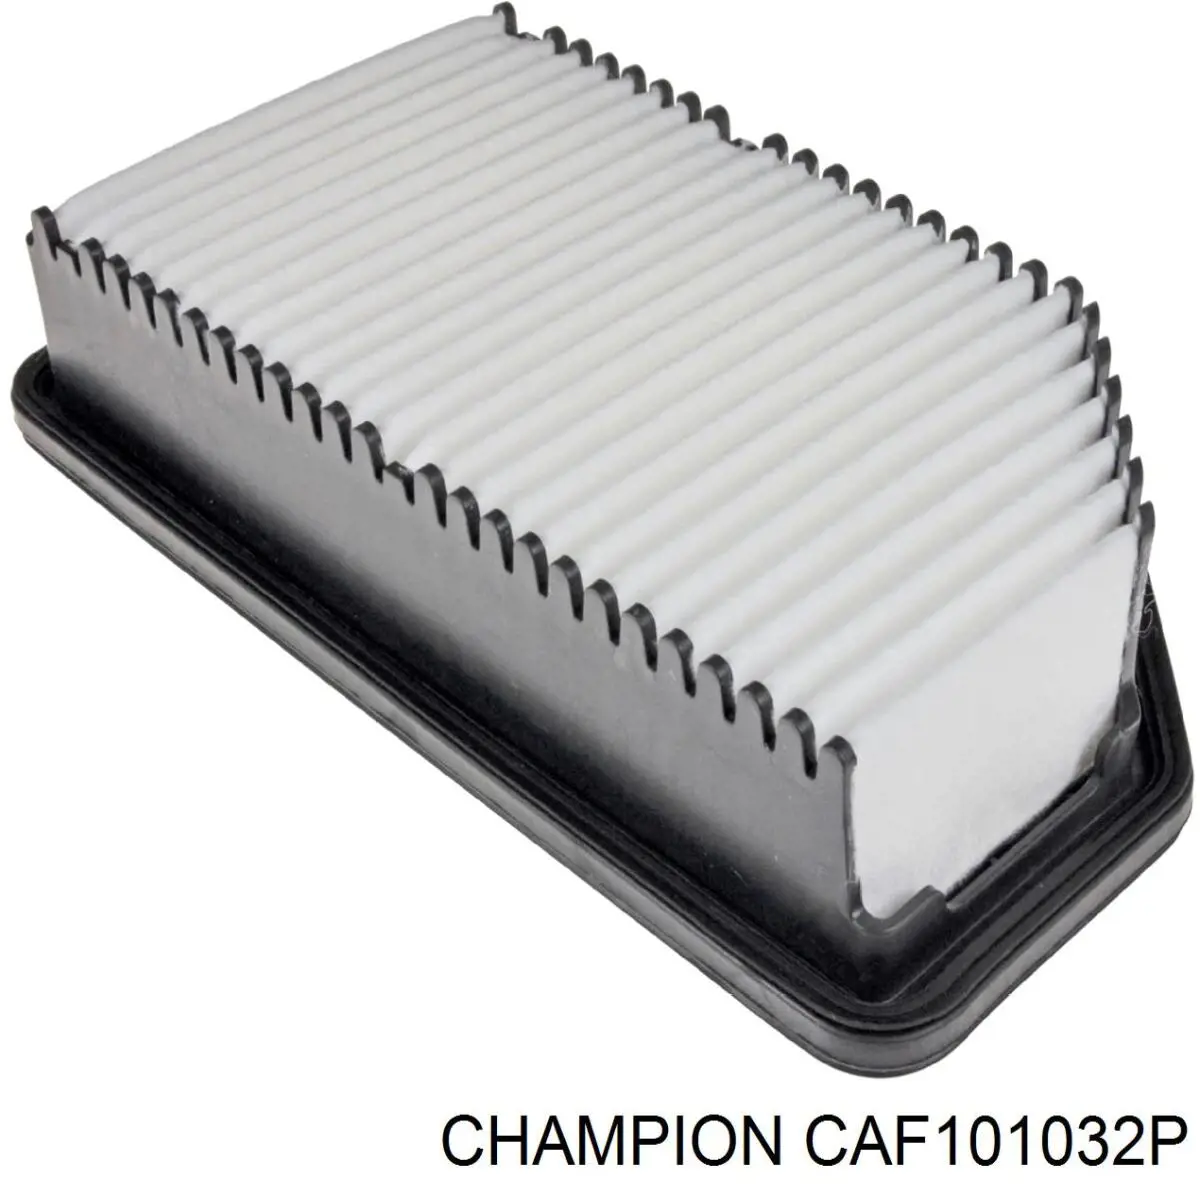 CAF101032P Champion filtro de aire